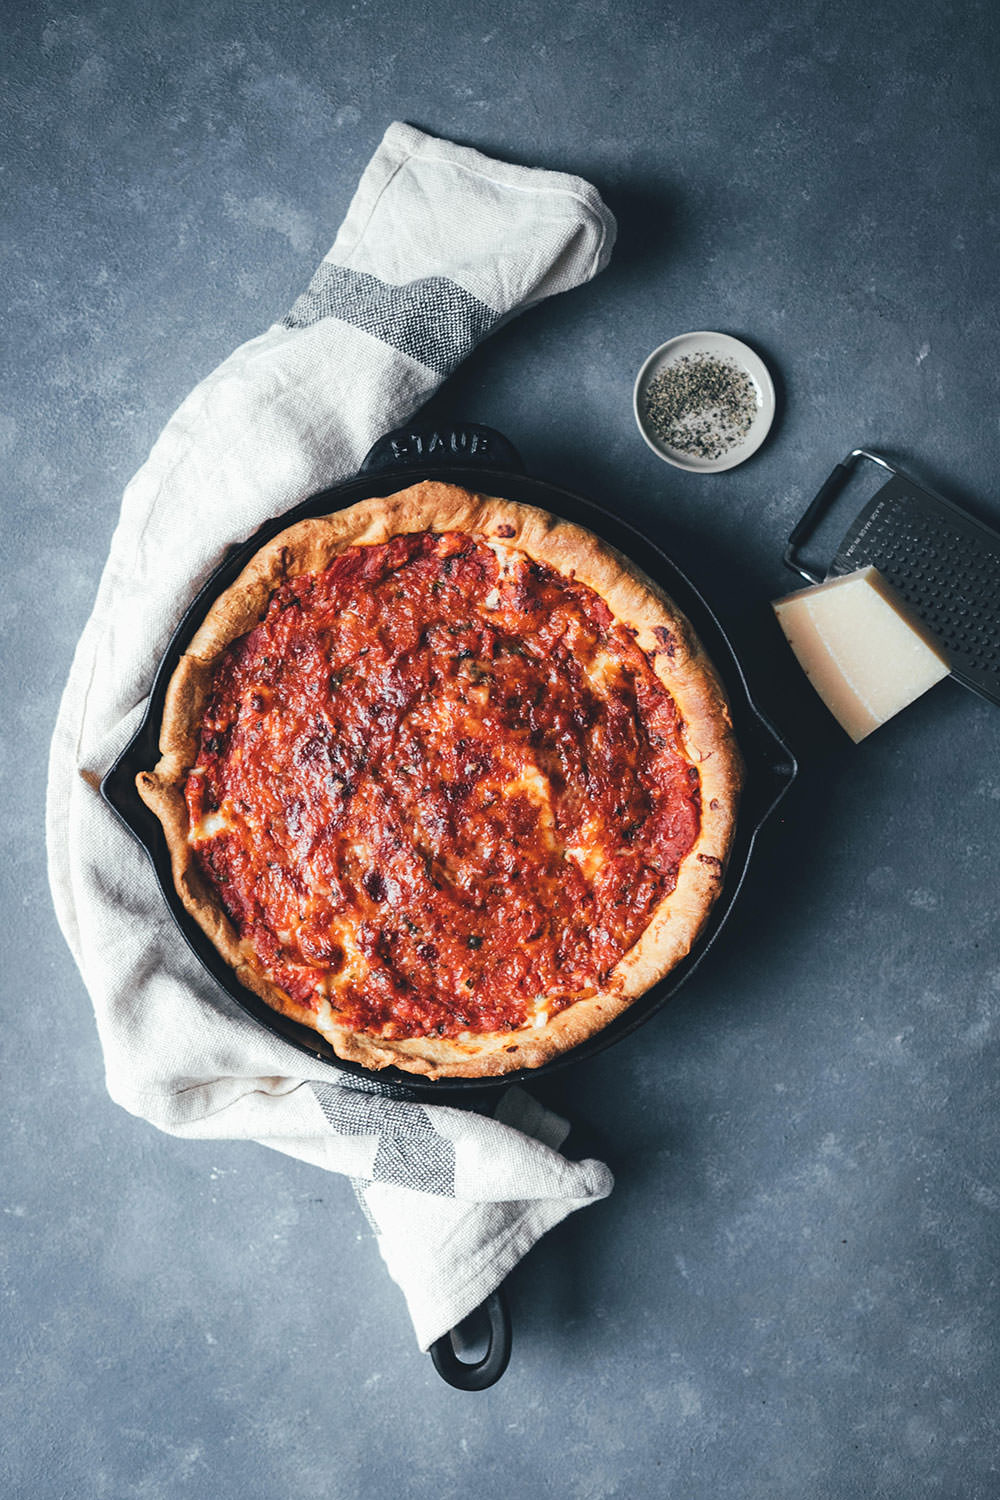 Rezept für Chicago Style Deep Dish Pizza | amerikanische Pizza mit extra-krossem Boden und saftiger Tomaten-Mozzarella-Füllung | moeyskitchen.com #pizza #deepdishpizza #chicagostylepizza #chicagostyledeepdishpizza #pizzabacken #rezepte #foodblogger #vegetarisch